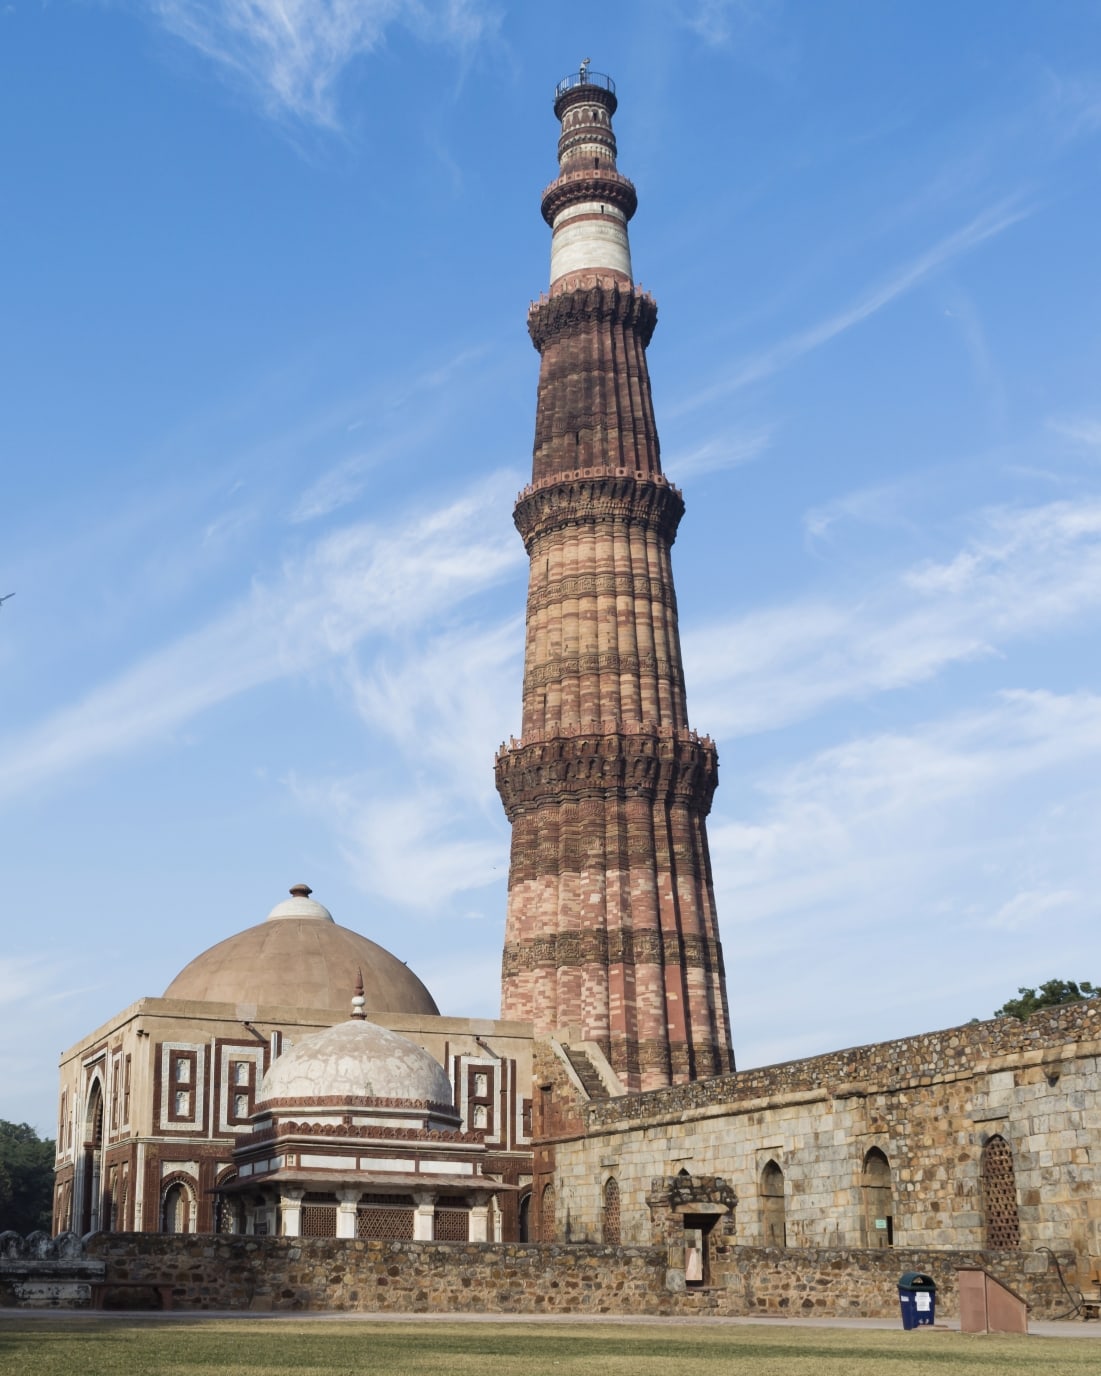 Qutub Minar - The Monument of India